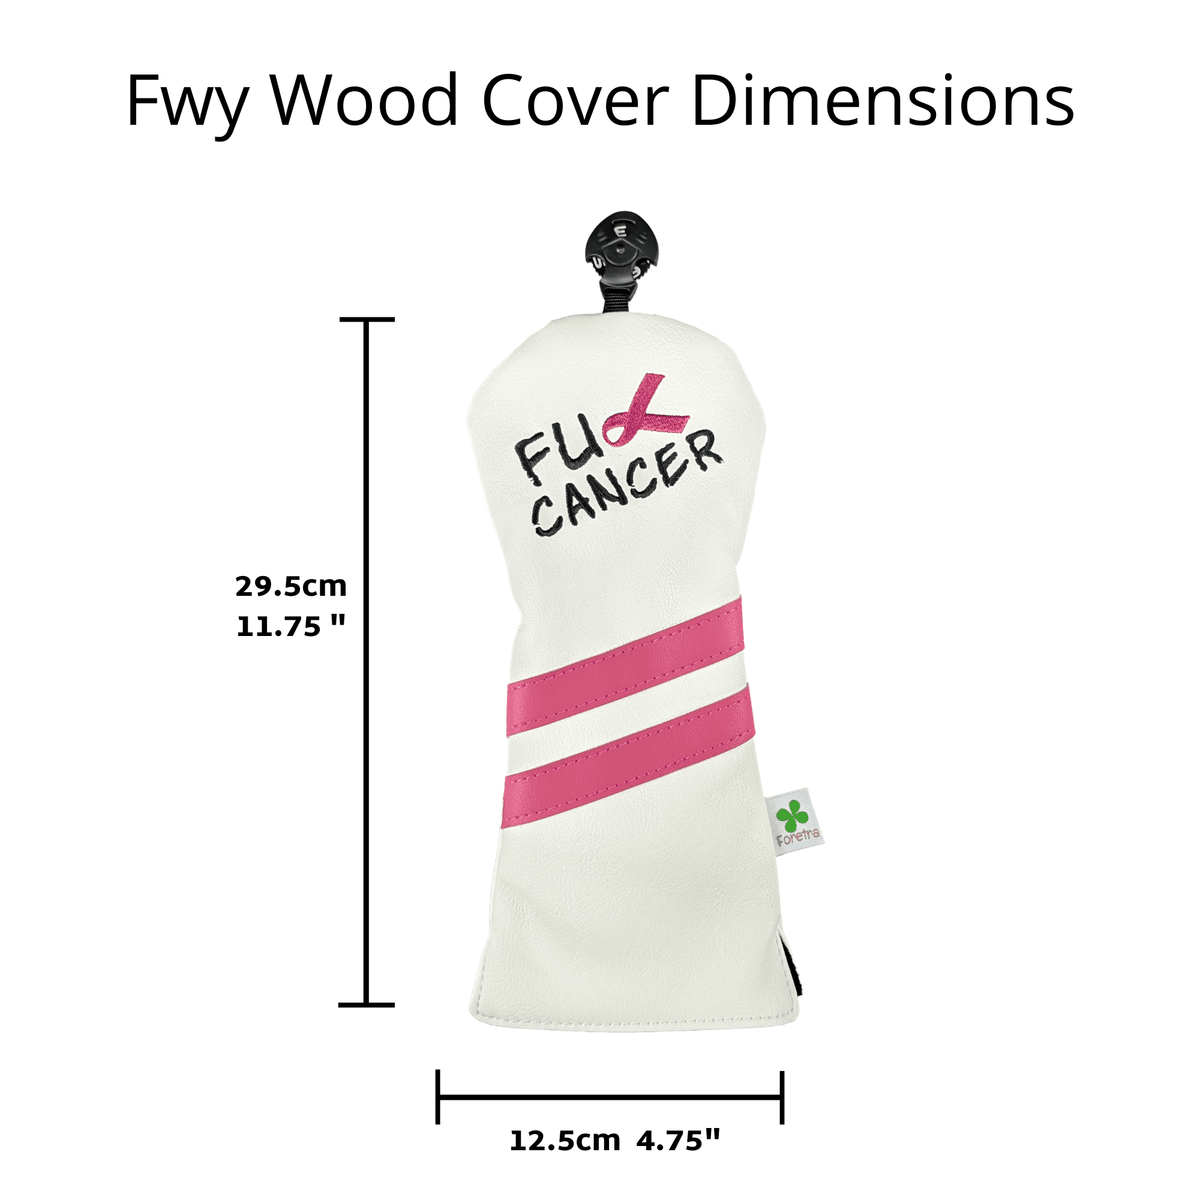 F U Cancer - Fairway Wood Head Cover